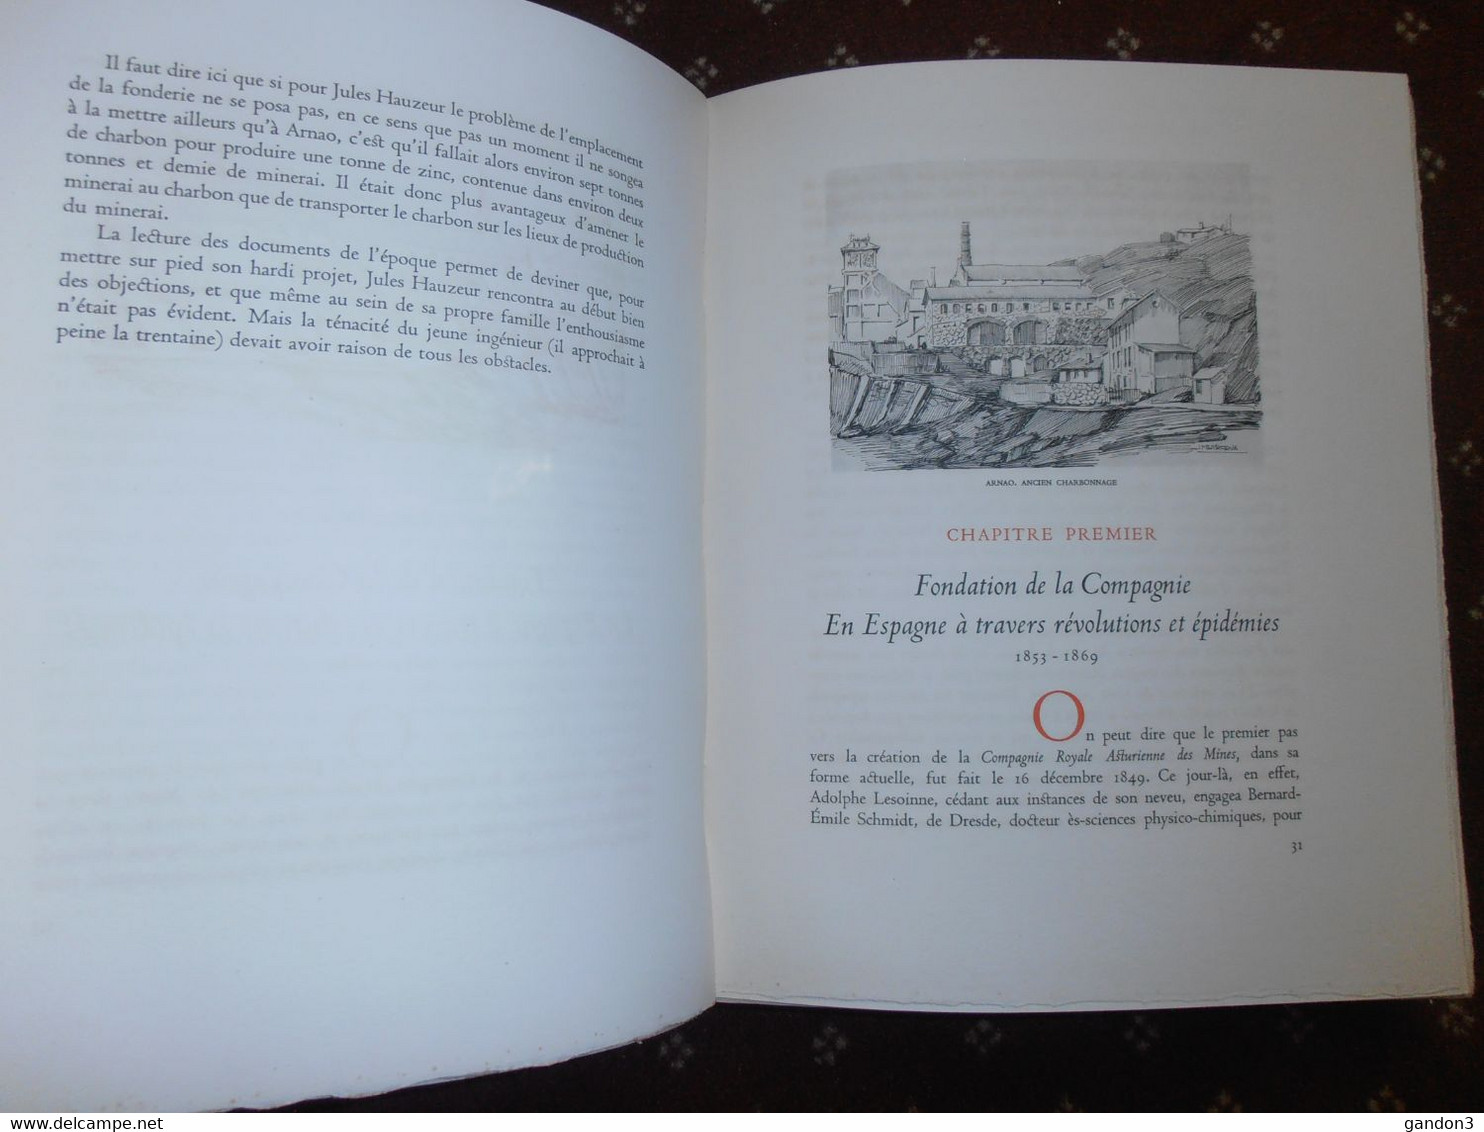 Livre  :  La  COMPAGNIE  ROYALE  ASTURIENNE  des  MINES   -    édité en 1954 pour le Centenaire de la Fondation  -